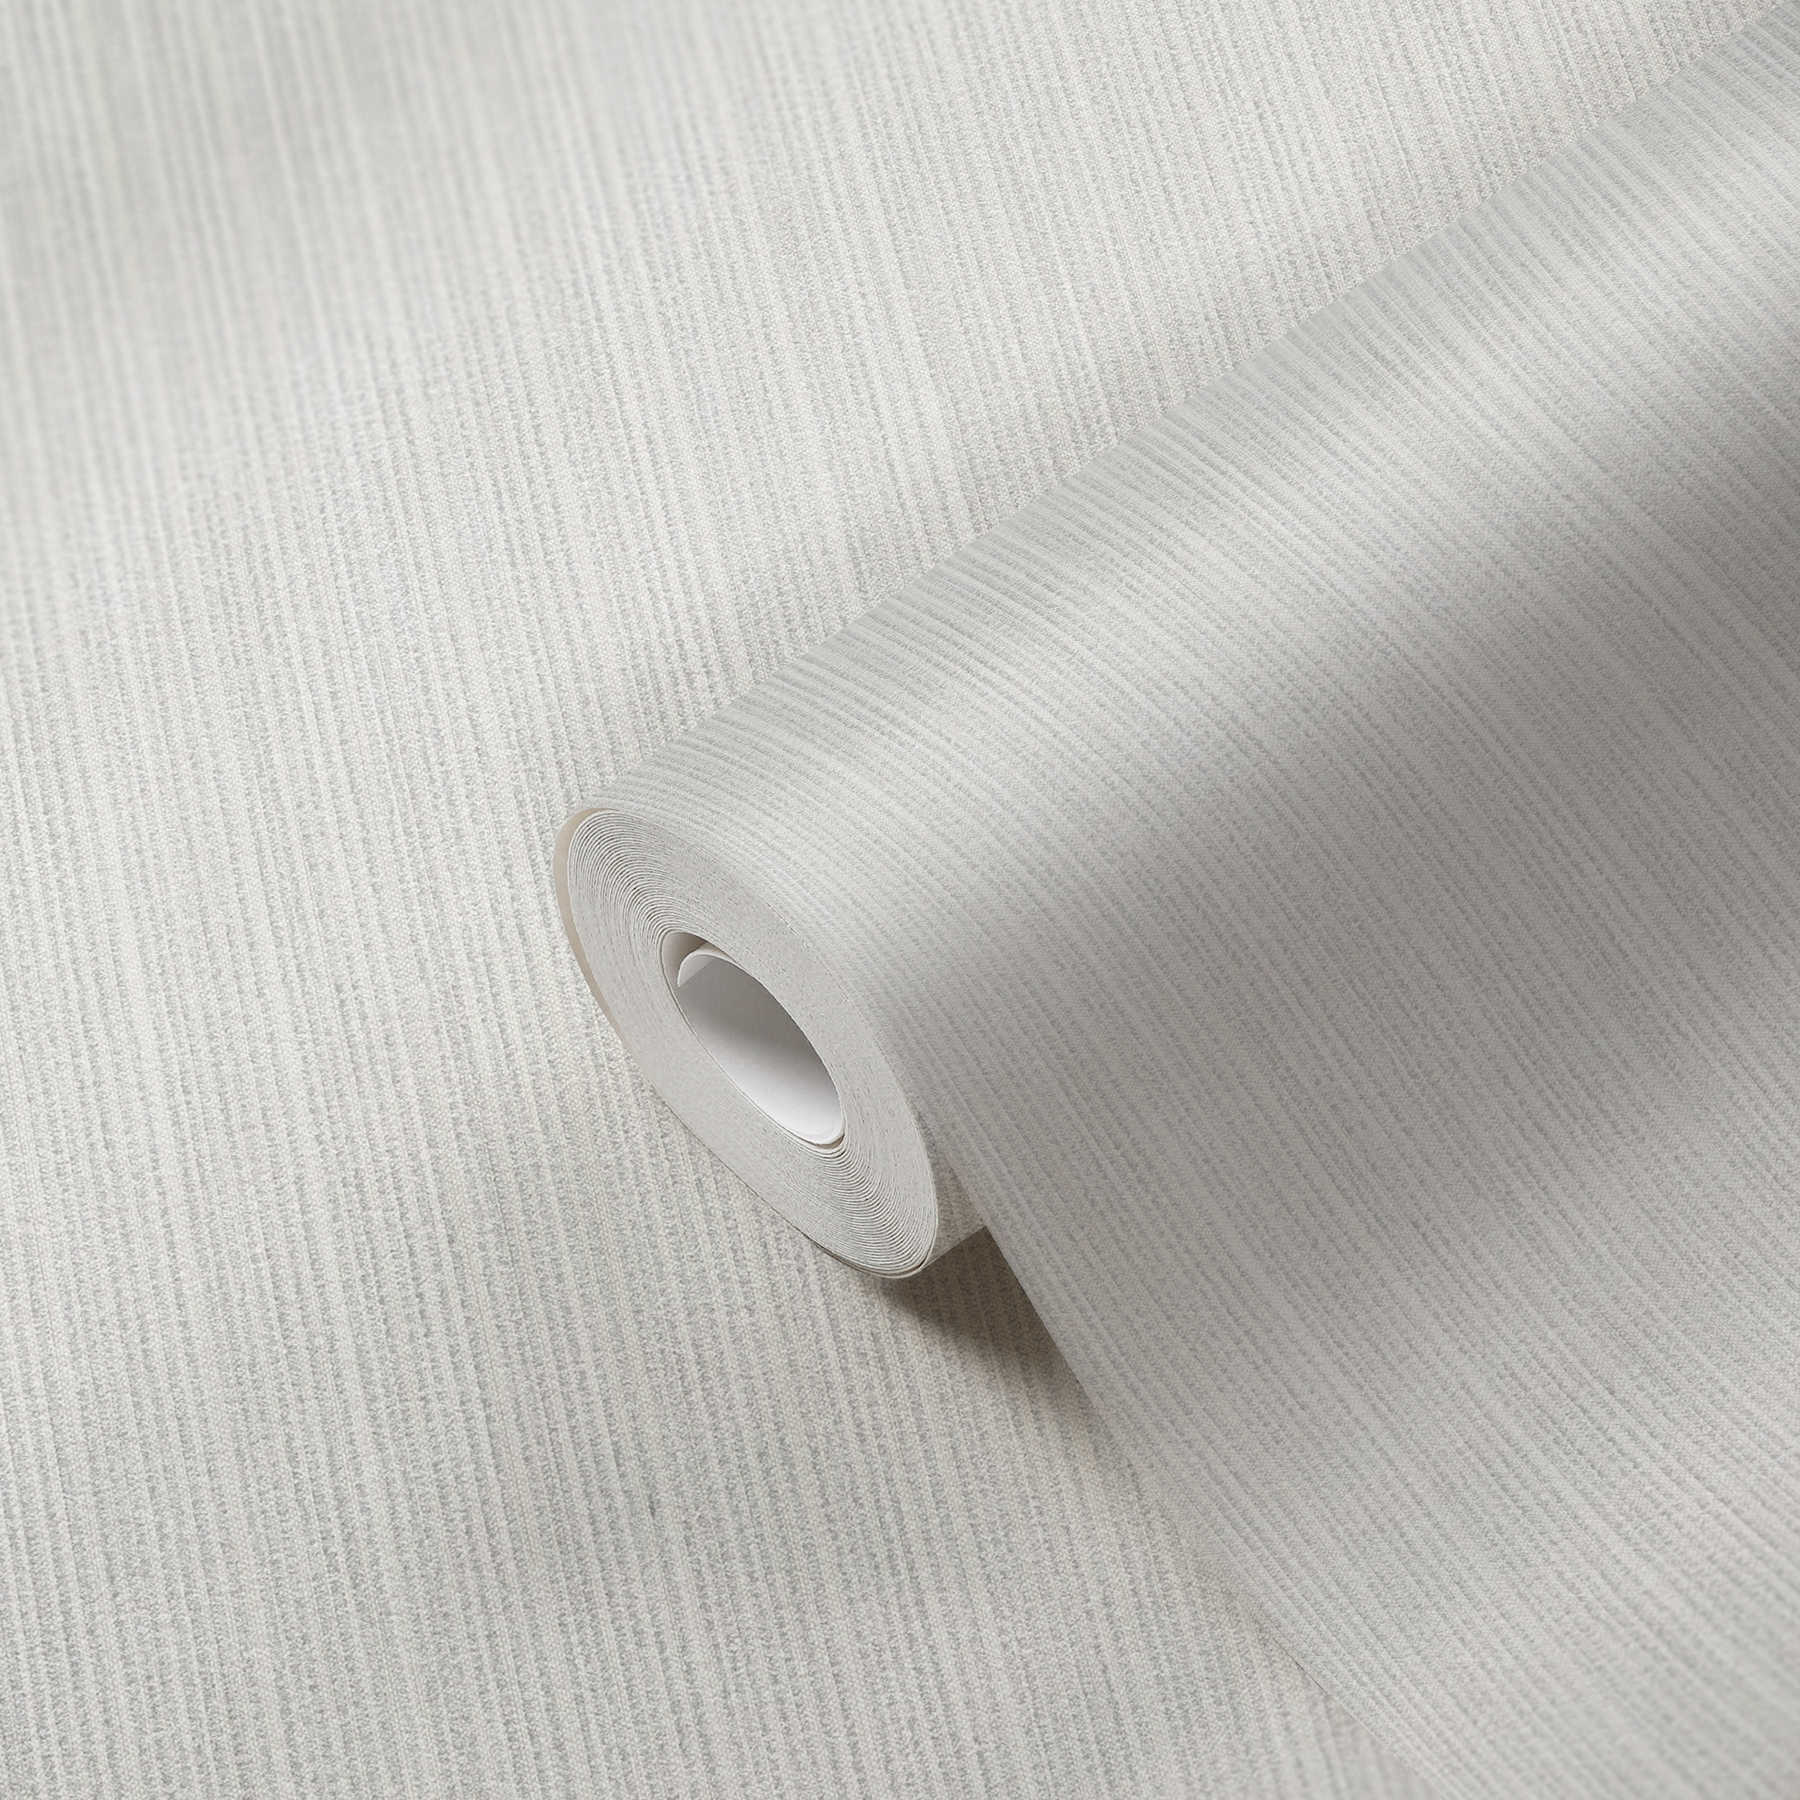             Carta da parati in tessuto non tessuto con struttura a grana e linee - grigio
        